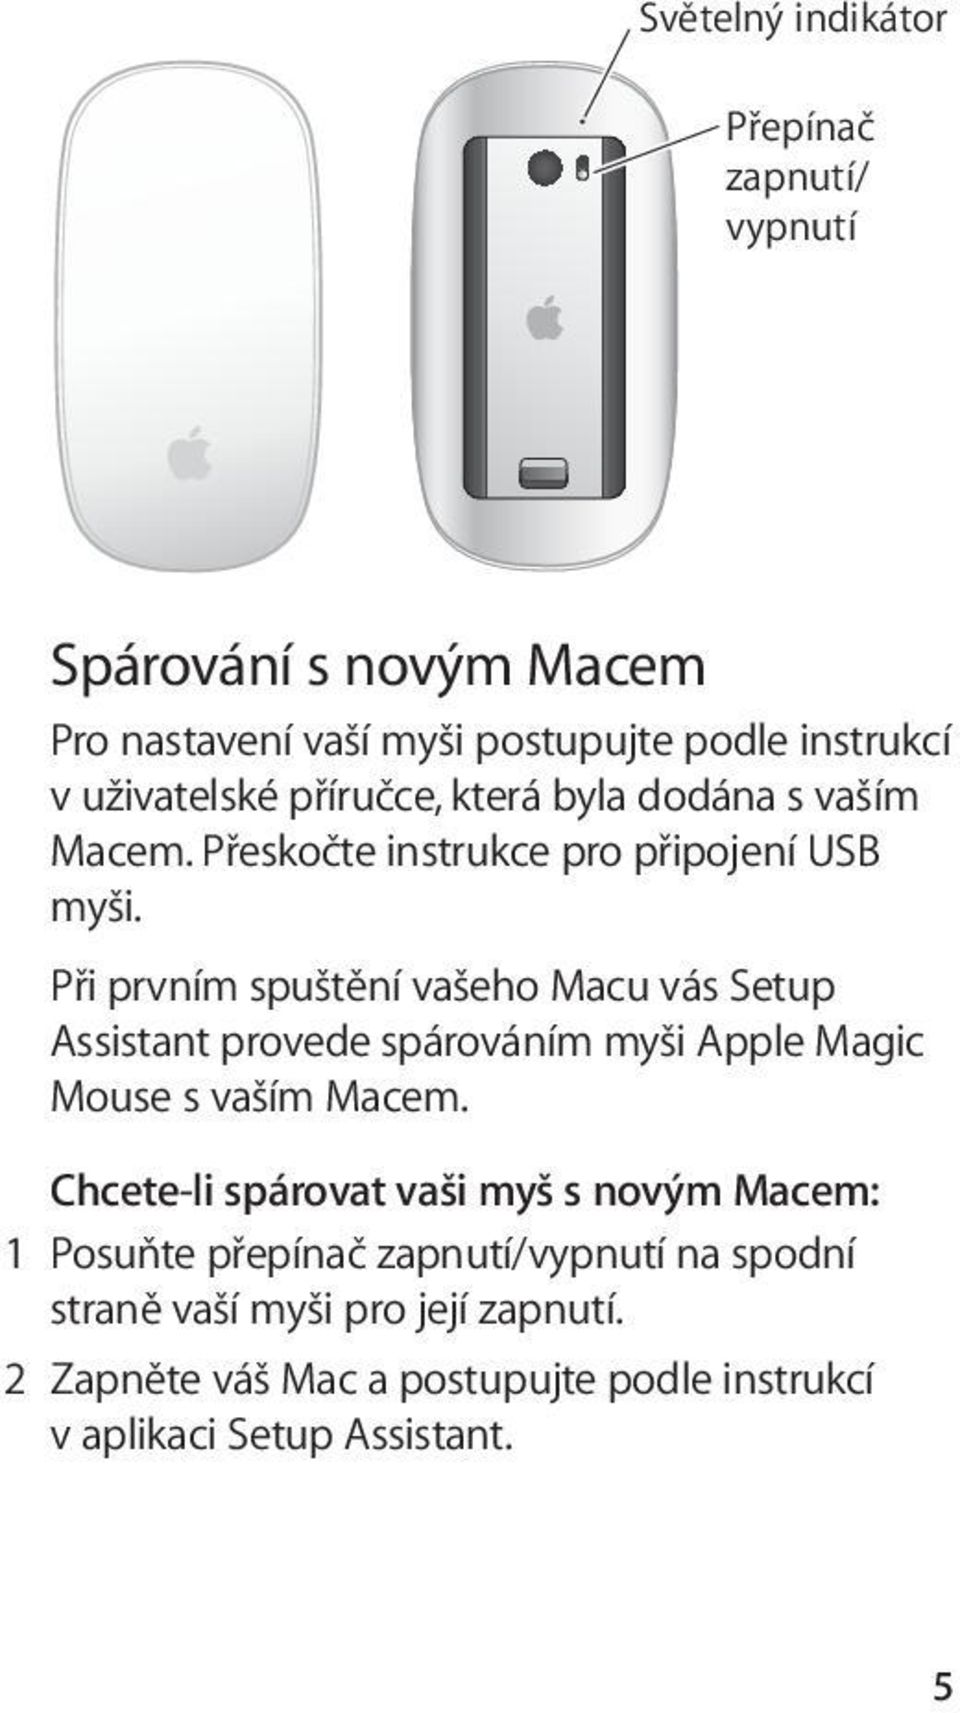 Při prvním spuštění vašeho Macu vás Setup Assistant provede spárováním myši Apple Magic Mouse s vaším Macem.